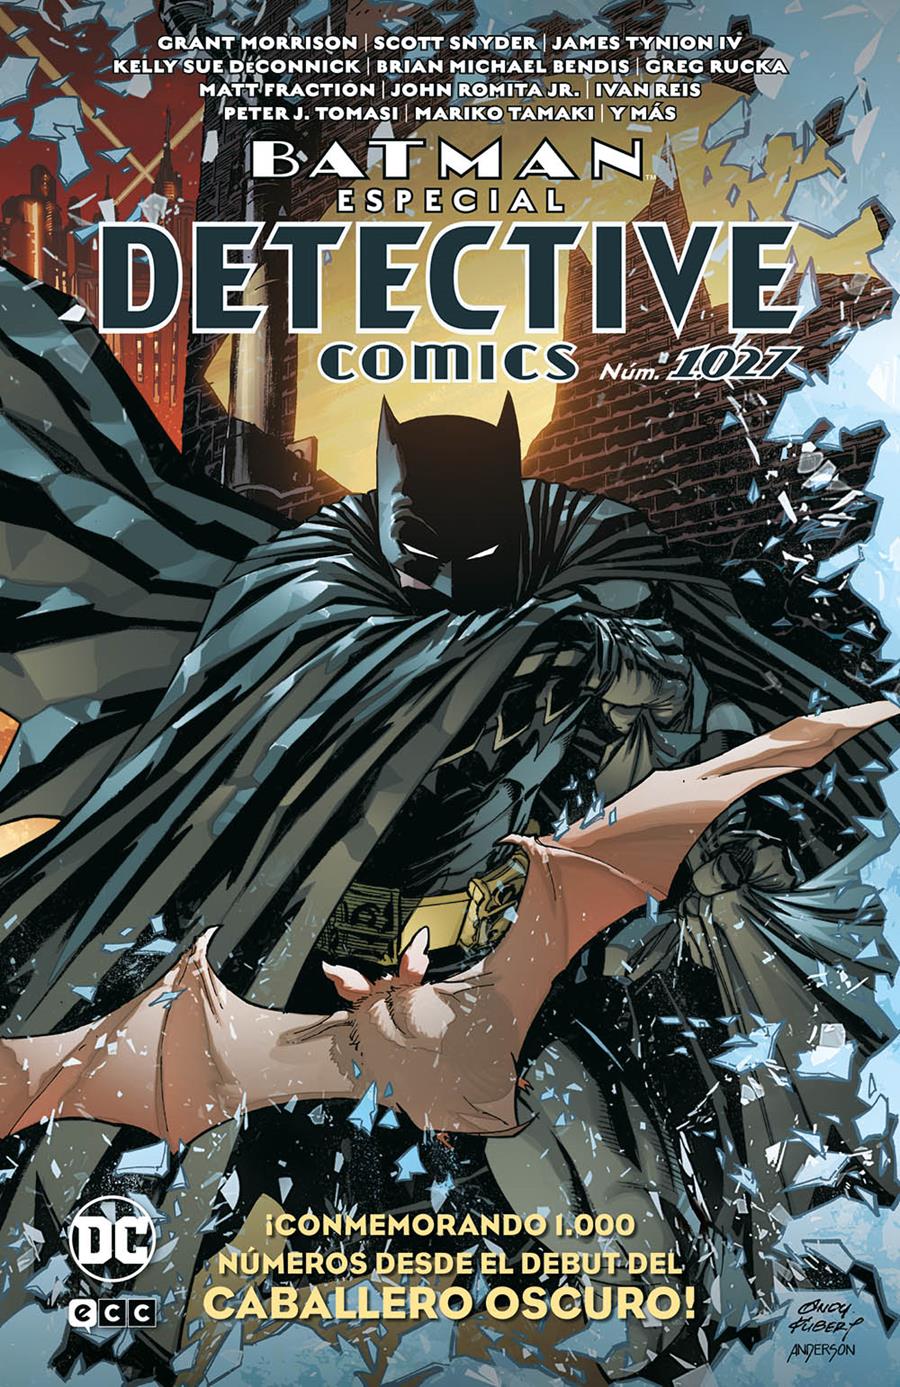 Batman: Especial Detective Comics núm. 1.027 | N0521-ECC200 | Varios autores | Terra de Còmic - Tu tienda de cómics online especializada en cómics, manga y merchandising